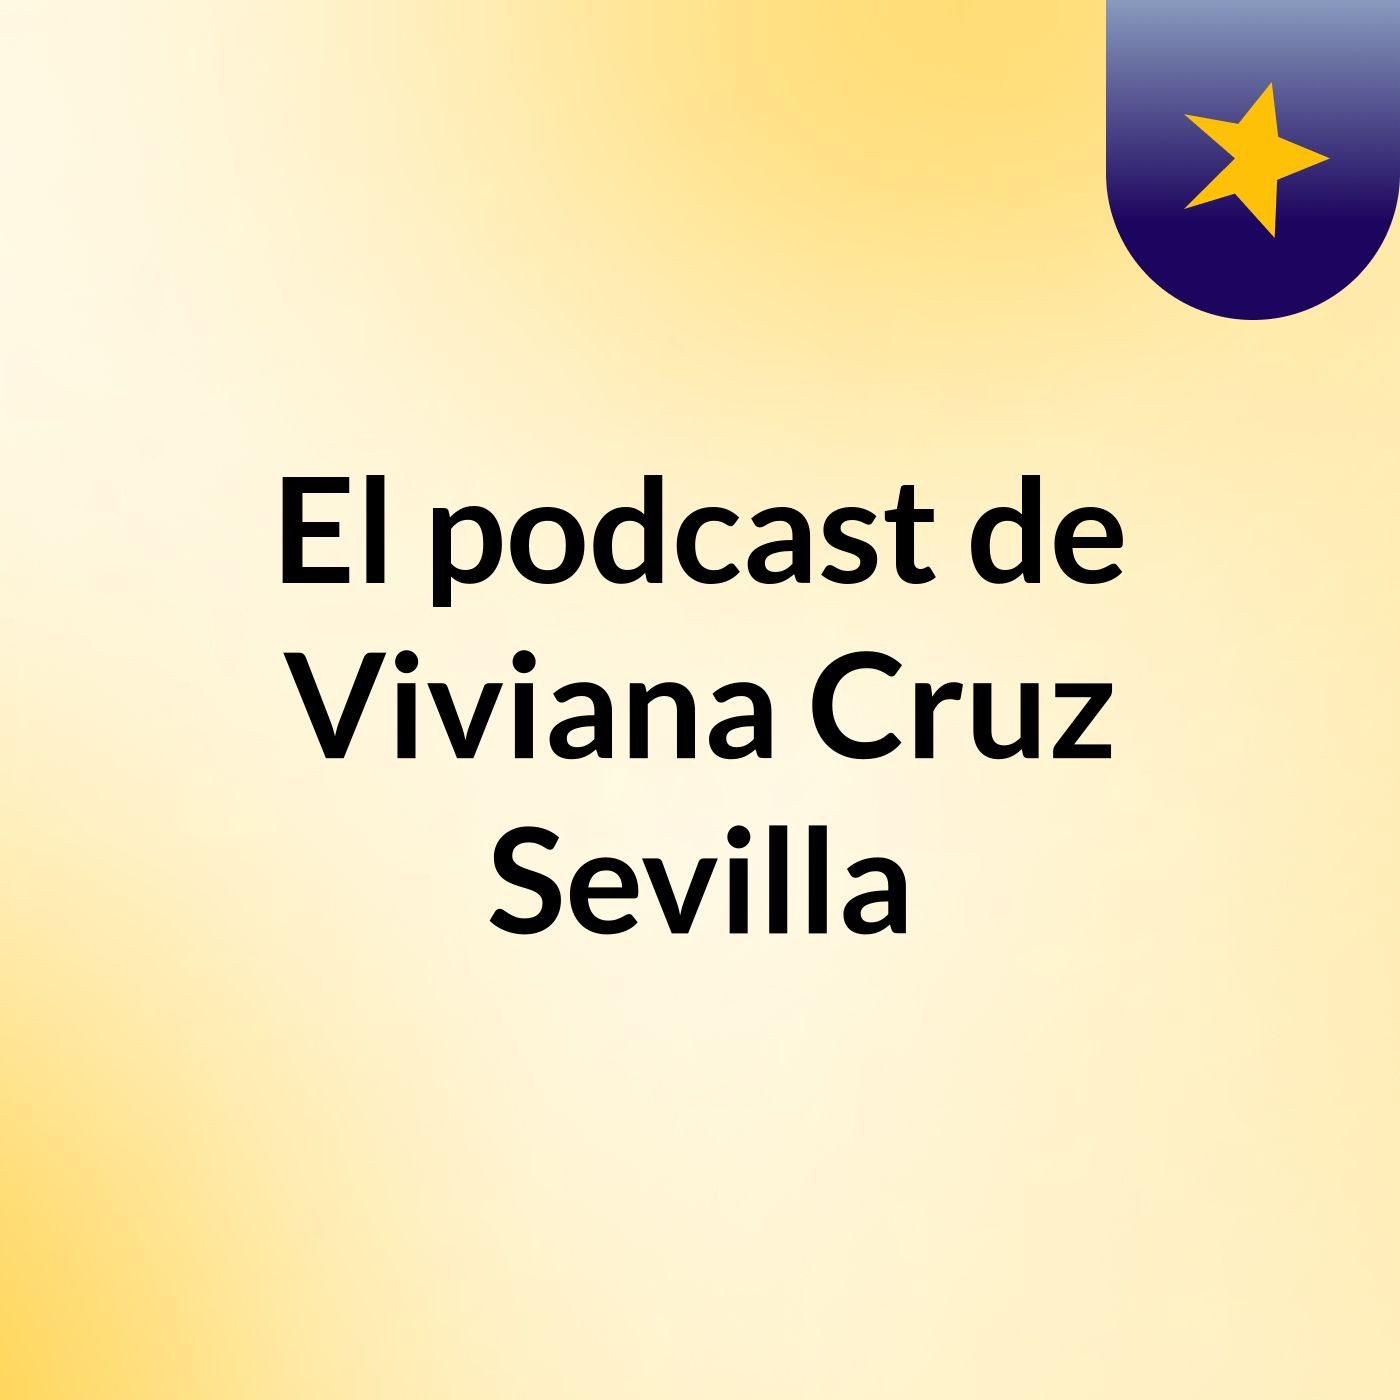 El podcast de Viviana Cruz Sevilla